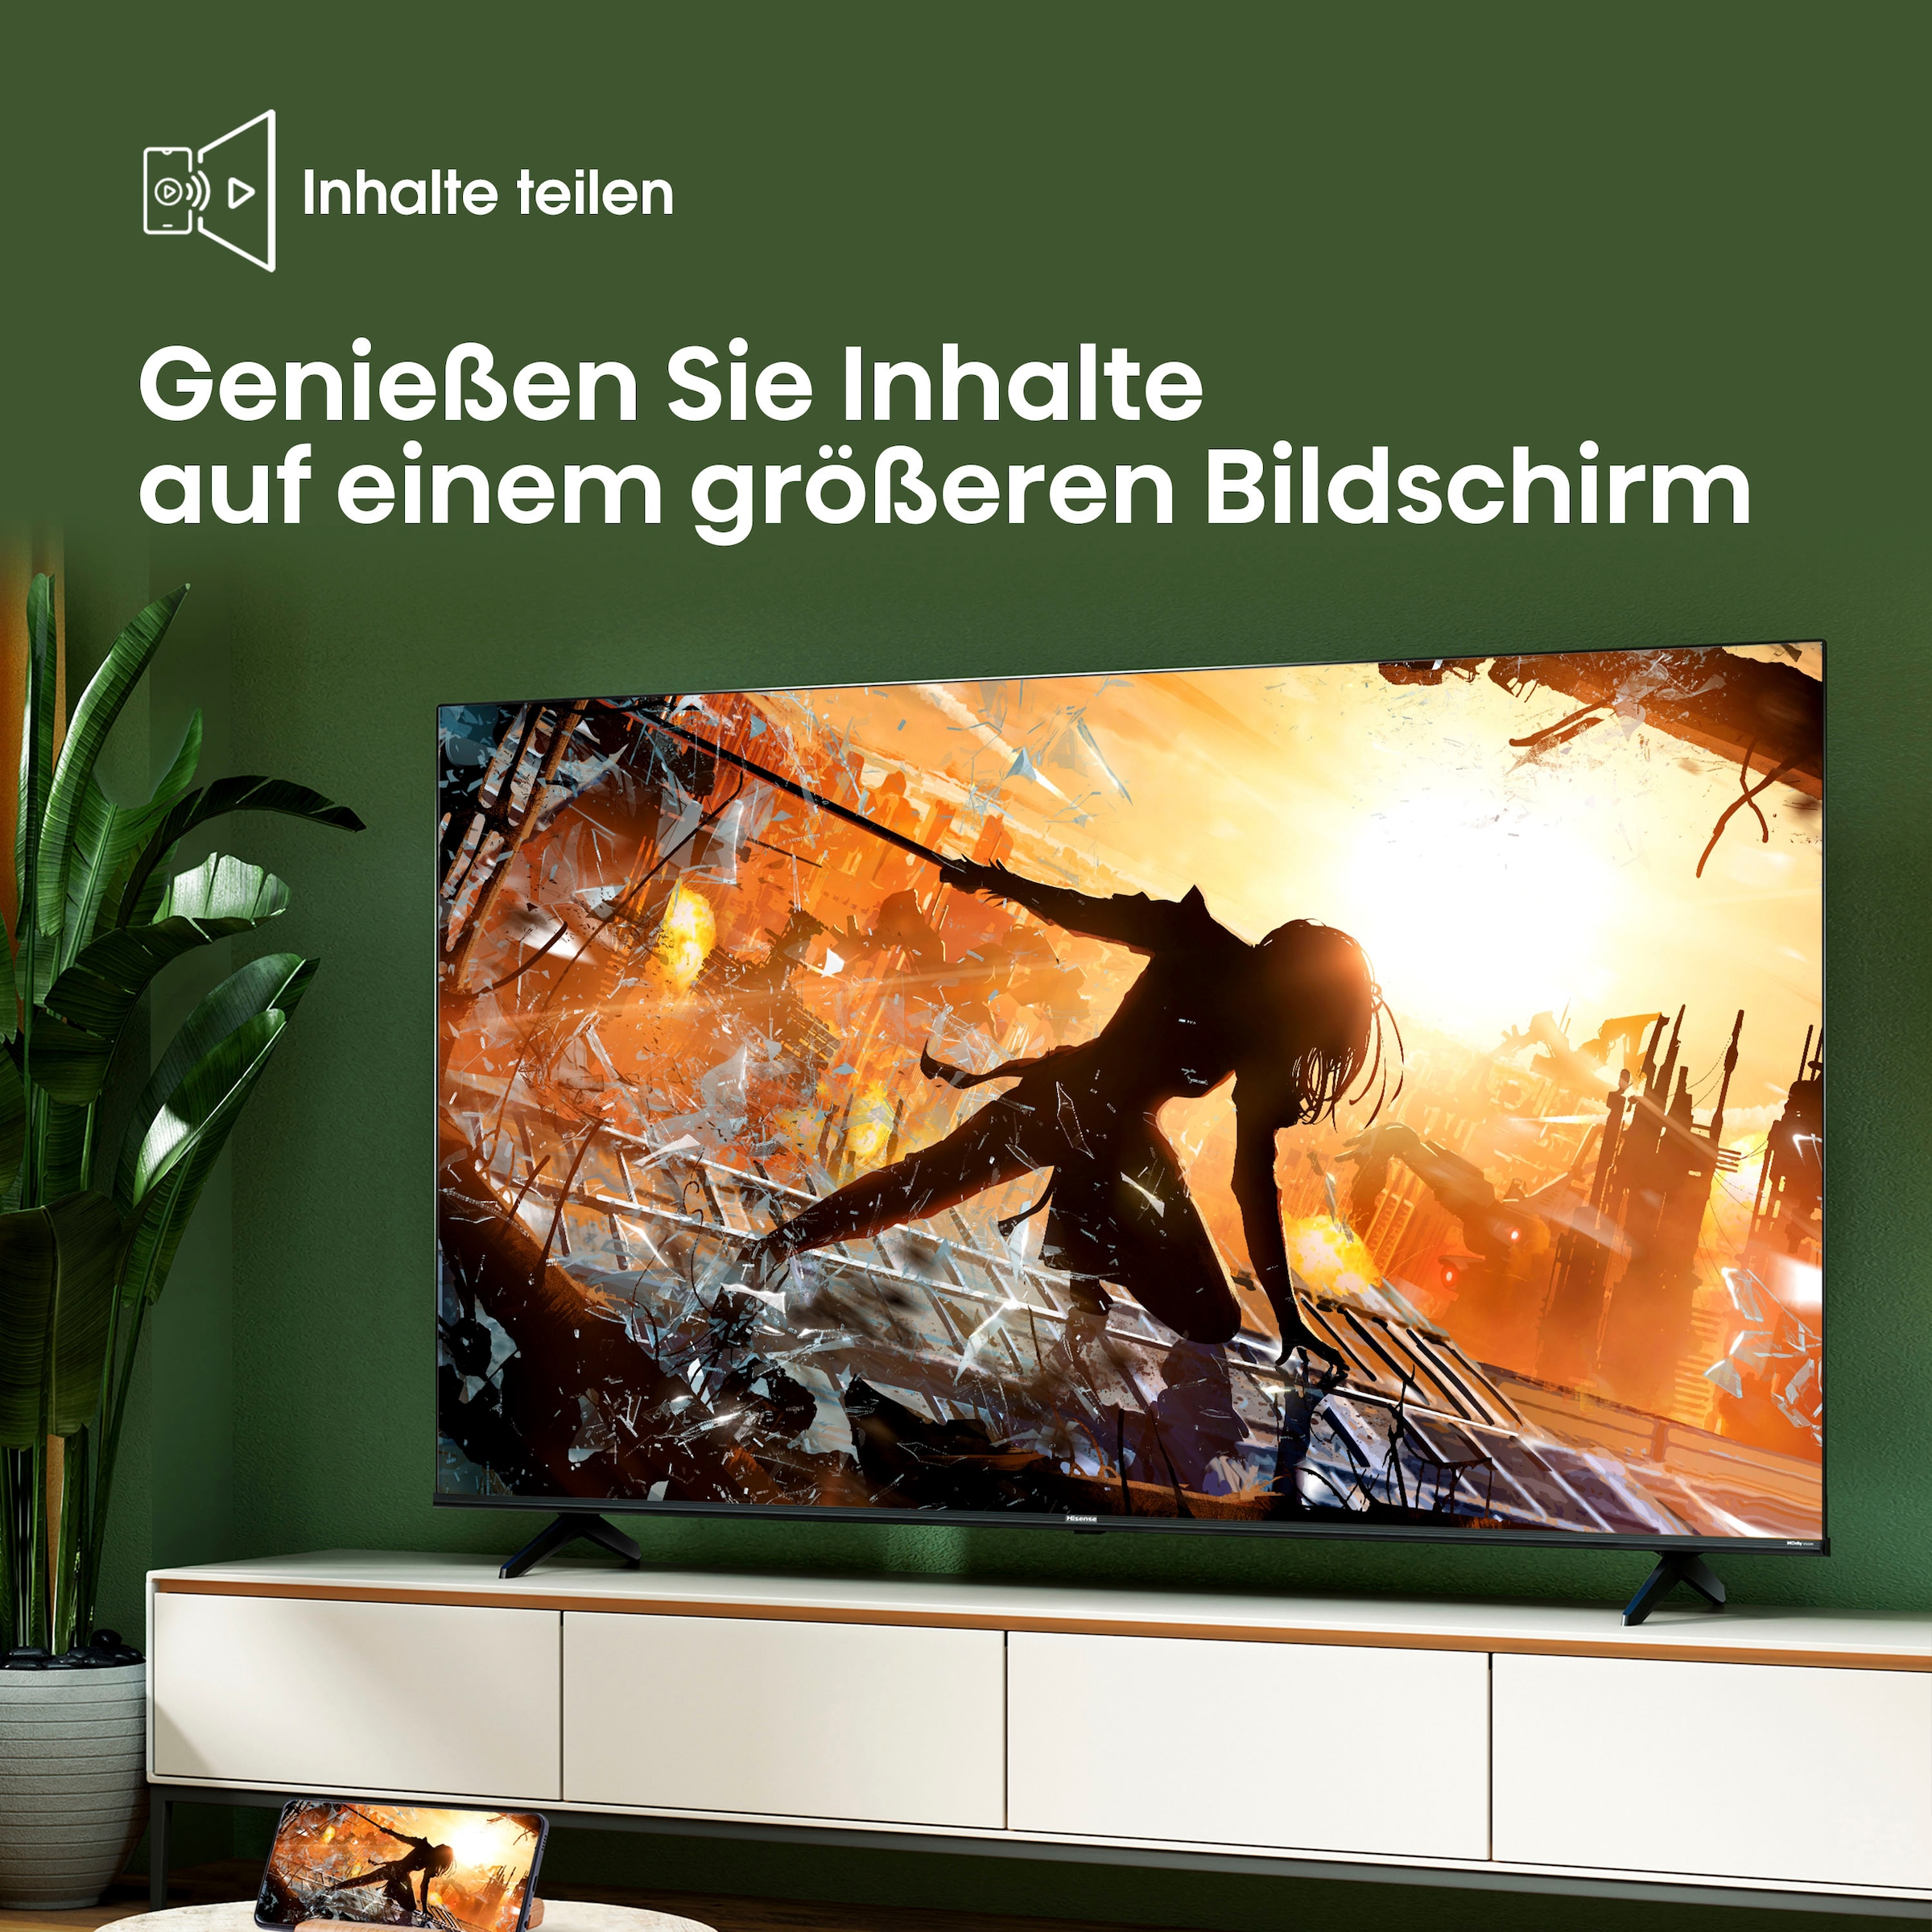 Hisense LED-Fernseher, 177,8 cm/70 Zoll, 4K Ultra HD, Smart-TV, Smart-TV, Dolby Vision, Triple Tuner DVB-C/S/S2/T/T2